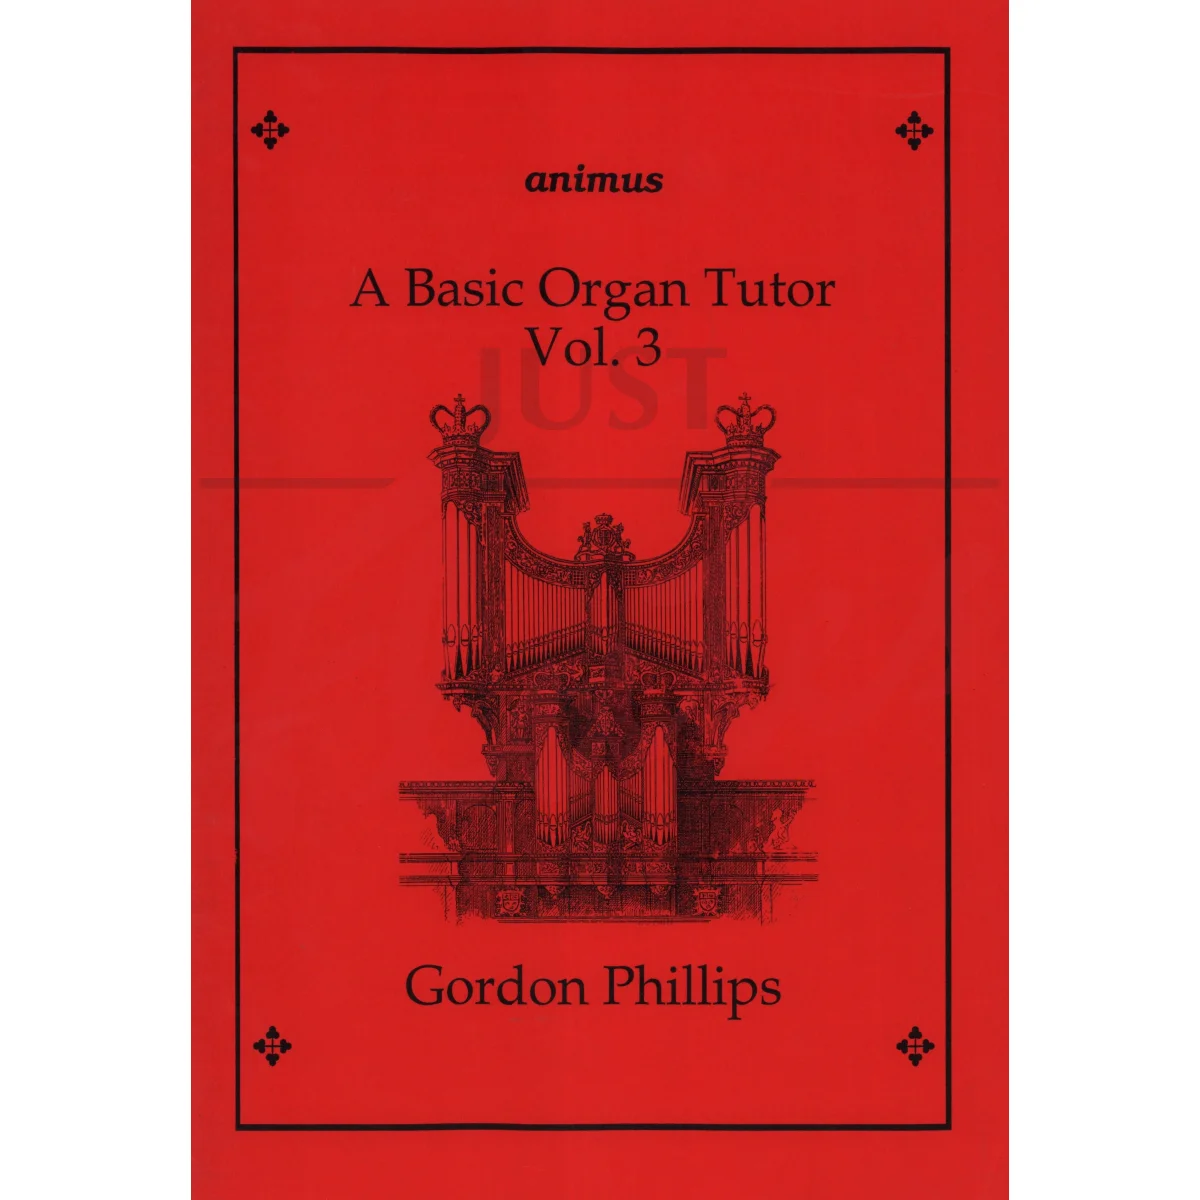 A Basic Organ Tutor Vol 3